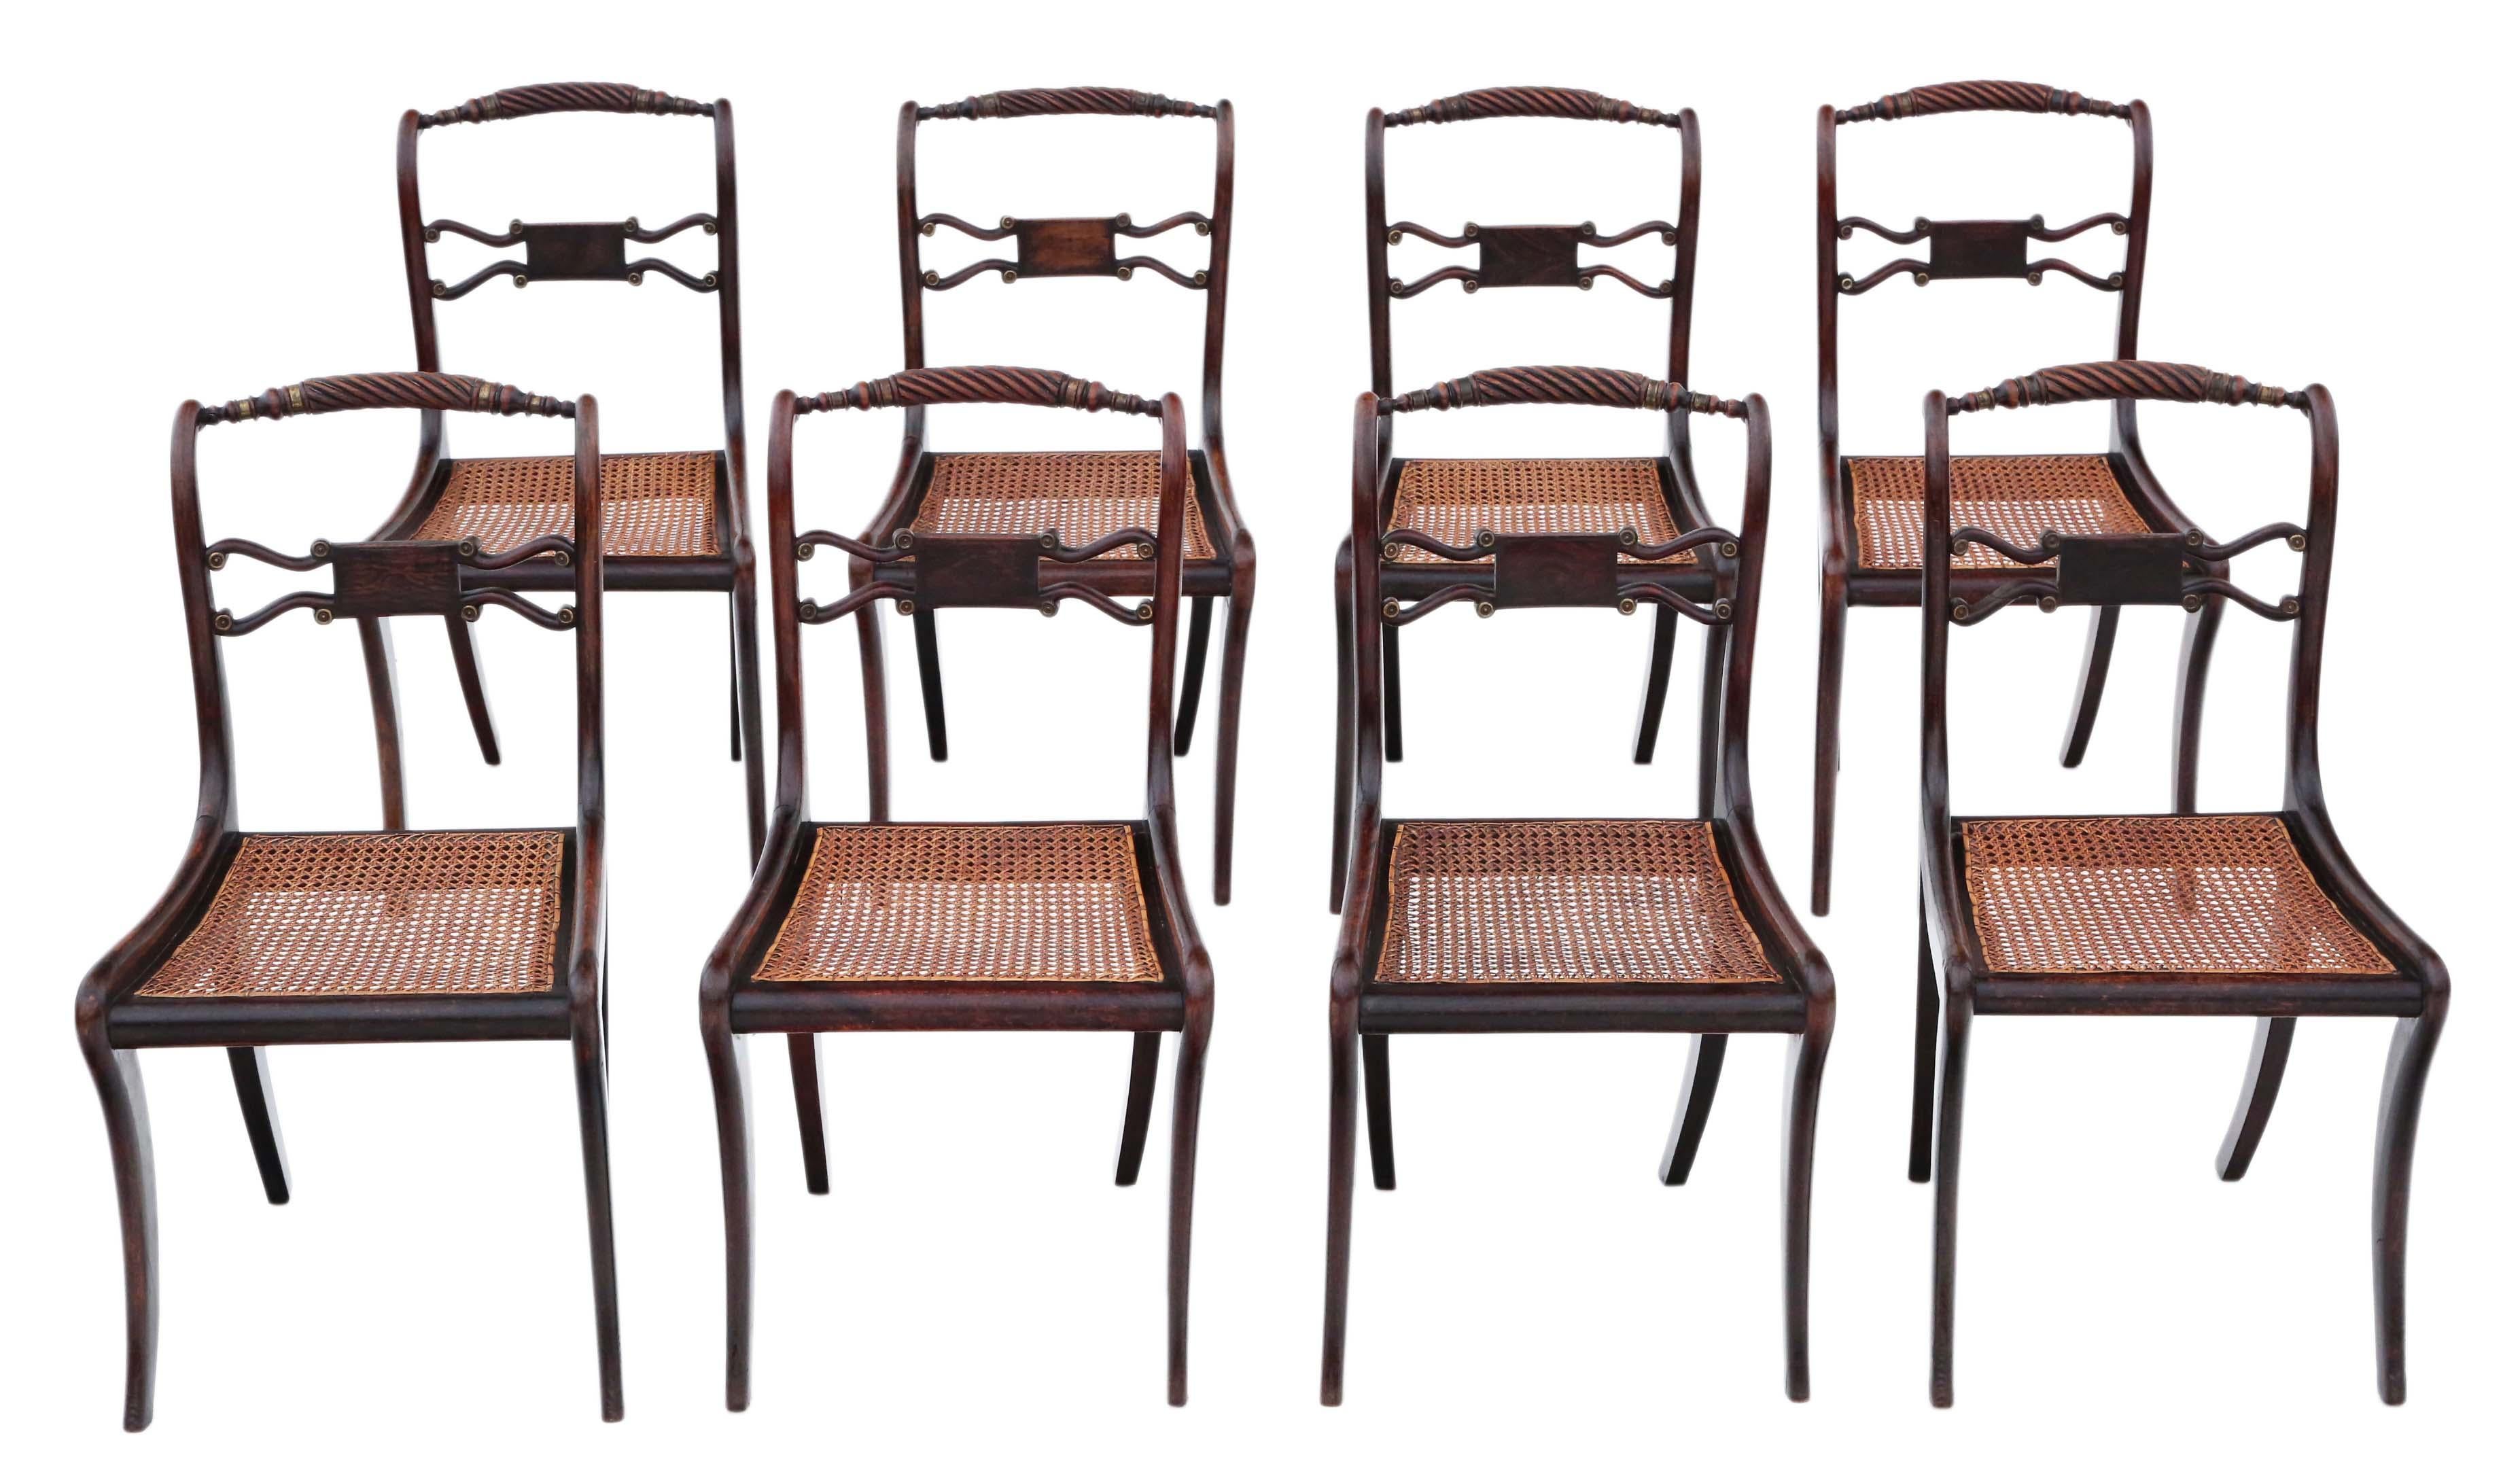 Entdecken Sie die seltene Eleganz dieses exquisiten Satzes von 8 Regency-Esszimmerstühlen aus Palisanderholzimitat aus dem frühen 19. Jahrhundert, um 1825. Diese Stühle haben eine atemberaubende Farbe und Patina, und die begehrten Säbelbeine tragen